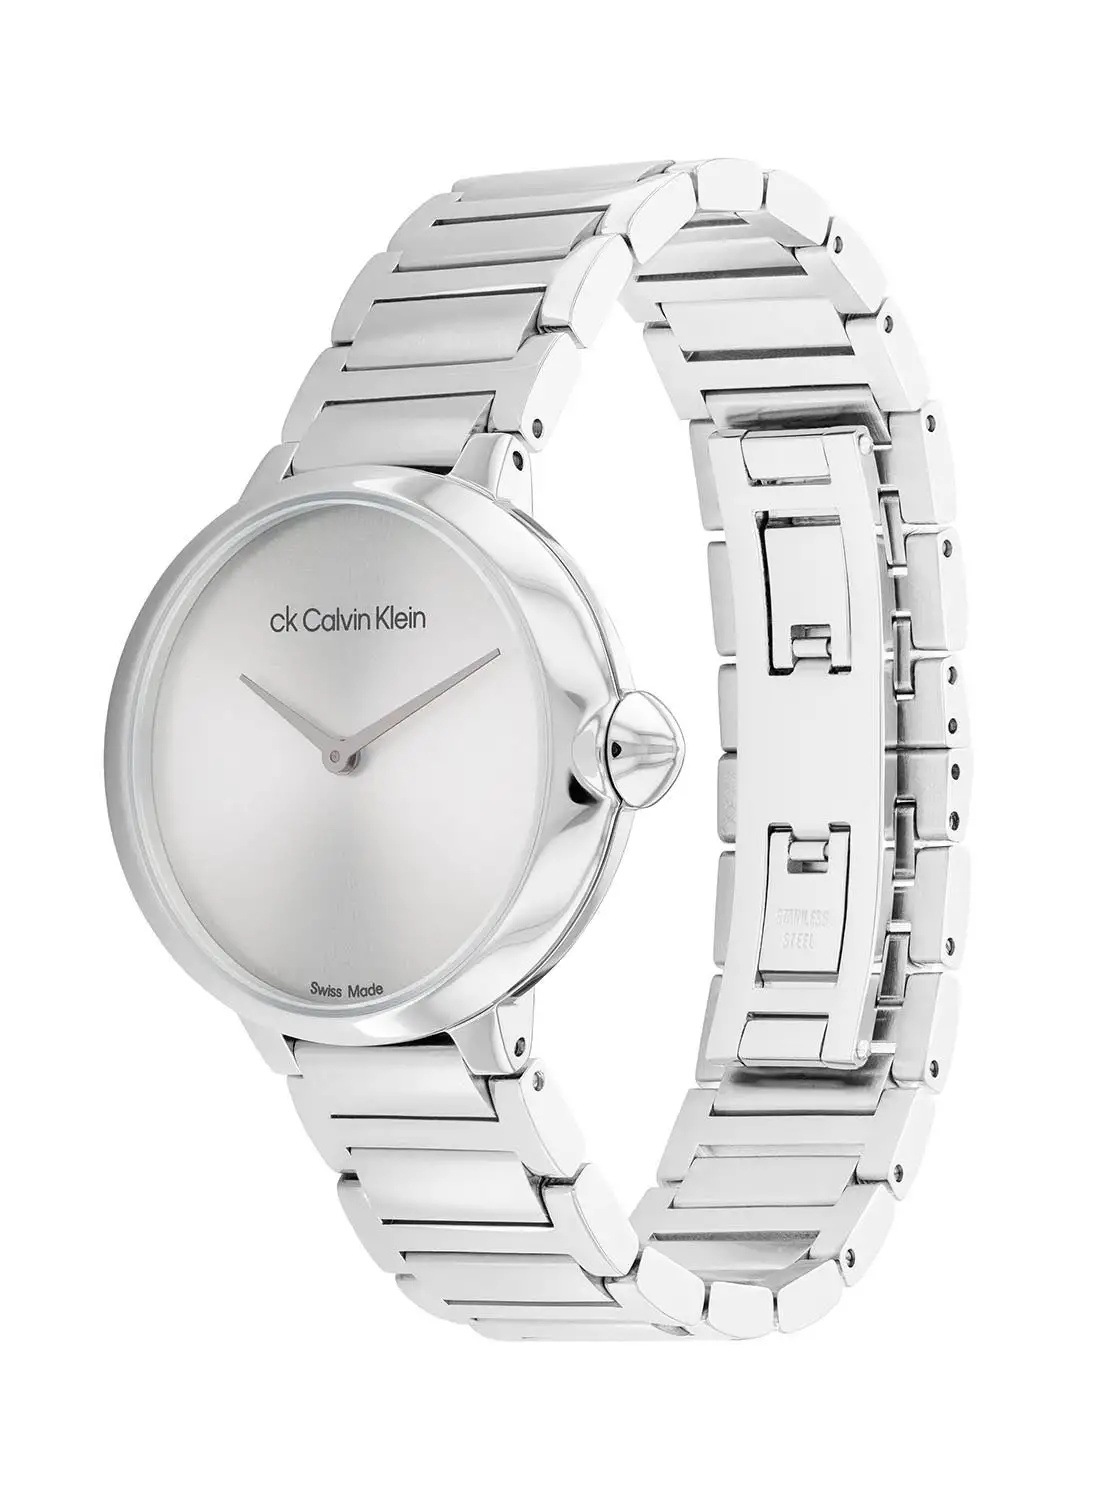 CALVIN KLEIN Women's Analog Round Shape Stainless Steel Wrist Watch 25000046 - 36.5 Mm